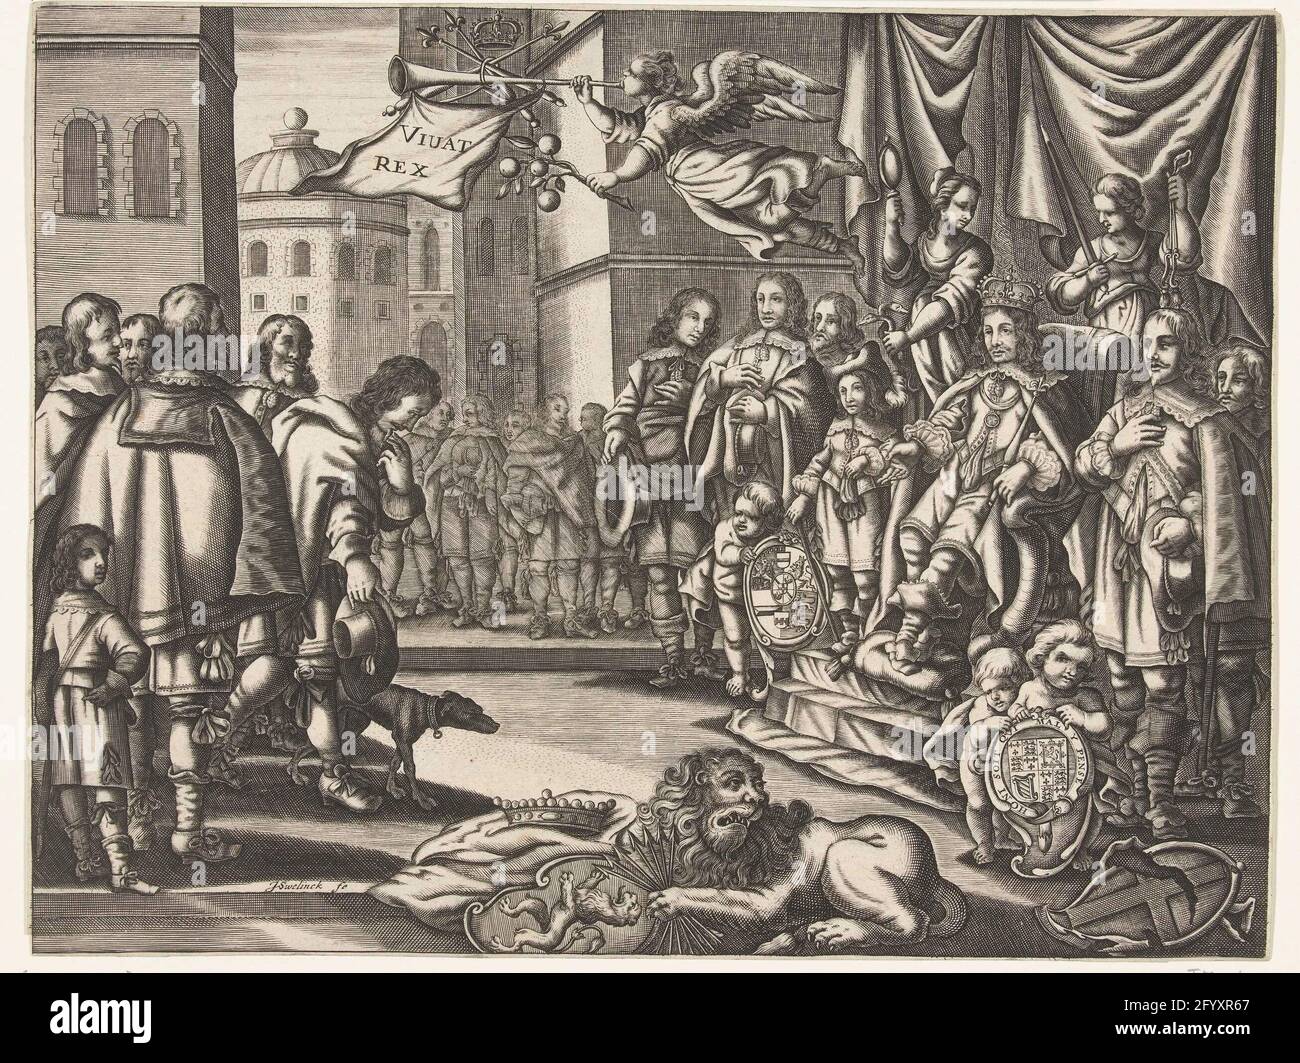 Roi Karel II avec l'appui de la République sur le trône d'Angleterre, 1660. Karel II, roi d'Angleterre assis sur le trône, 1660. À droite, le roi sur son trône entouré de conseillers, des personnifications de la prudence vertu et de la justice, à ses pieds putti avec les bras du prince d'orange et anglais stuart famille royale avec la ceinture et la devise de l'ordre des jarretières. Sur la droite au sol, les armoiries brisées de l'Angleterre. Sur le sol, le lion hollandais avec les armoiries de la Hollande et le faisceau de flèches. Dans l'air la renommée avec une branche orange et soufflant sur une trompette sur laquelle est vivat re Banque D'Images